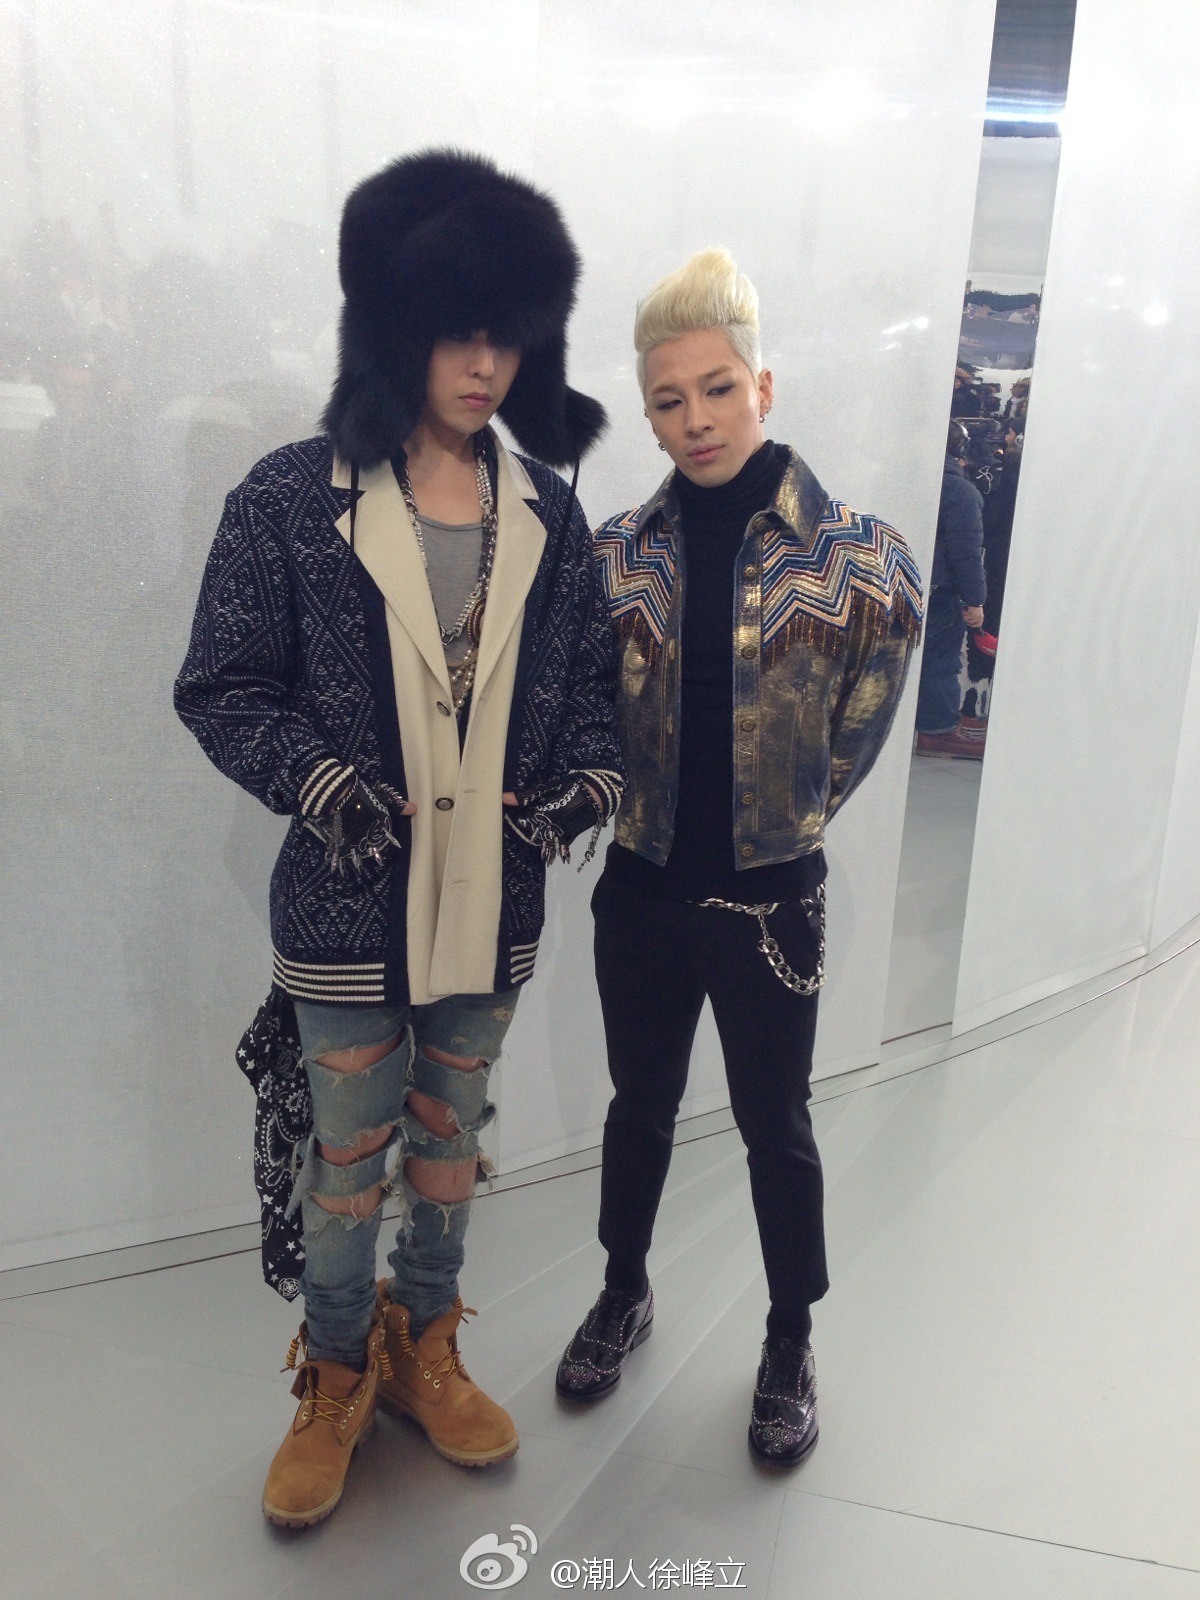 [21/1/2014][Photos] GDYB tại buổi trình diễn thời trang của Chanel SS14 Haute Couture Tumblr_mzr1hli1tf1qb2yato2_1280